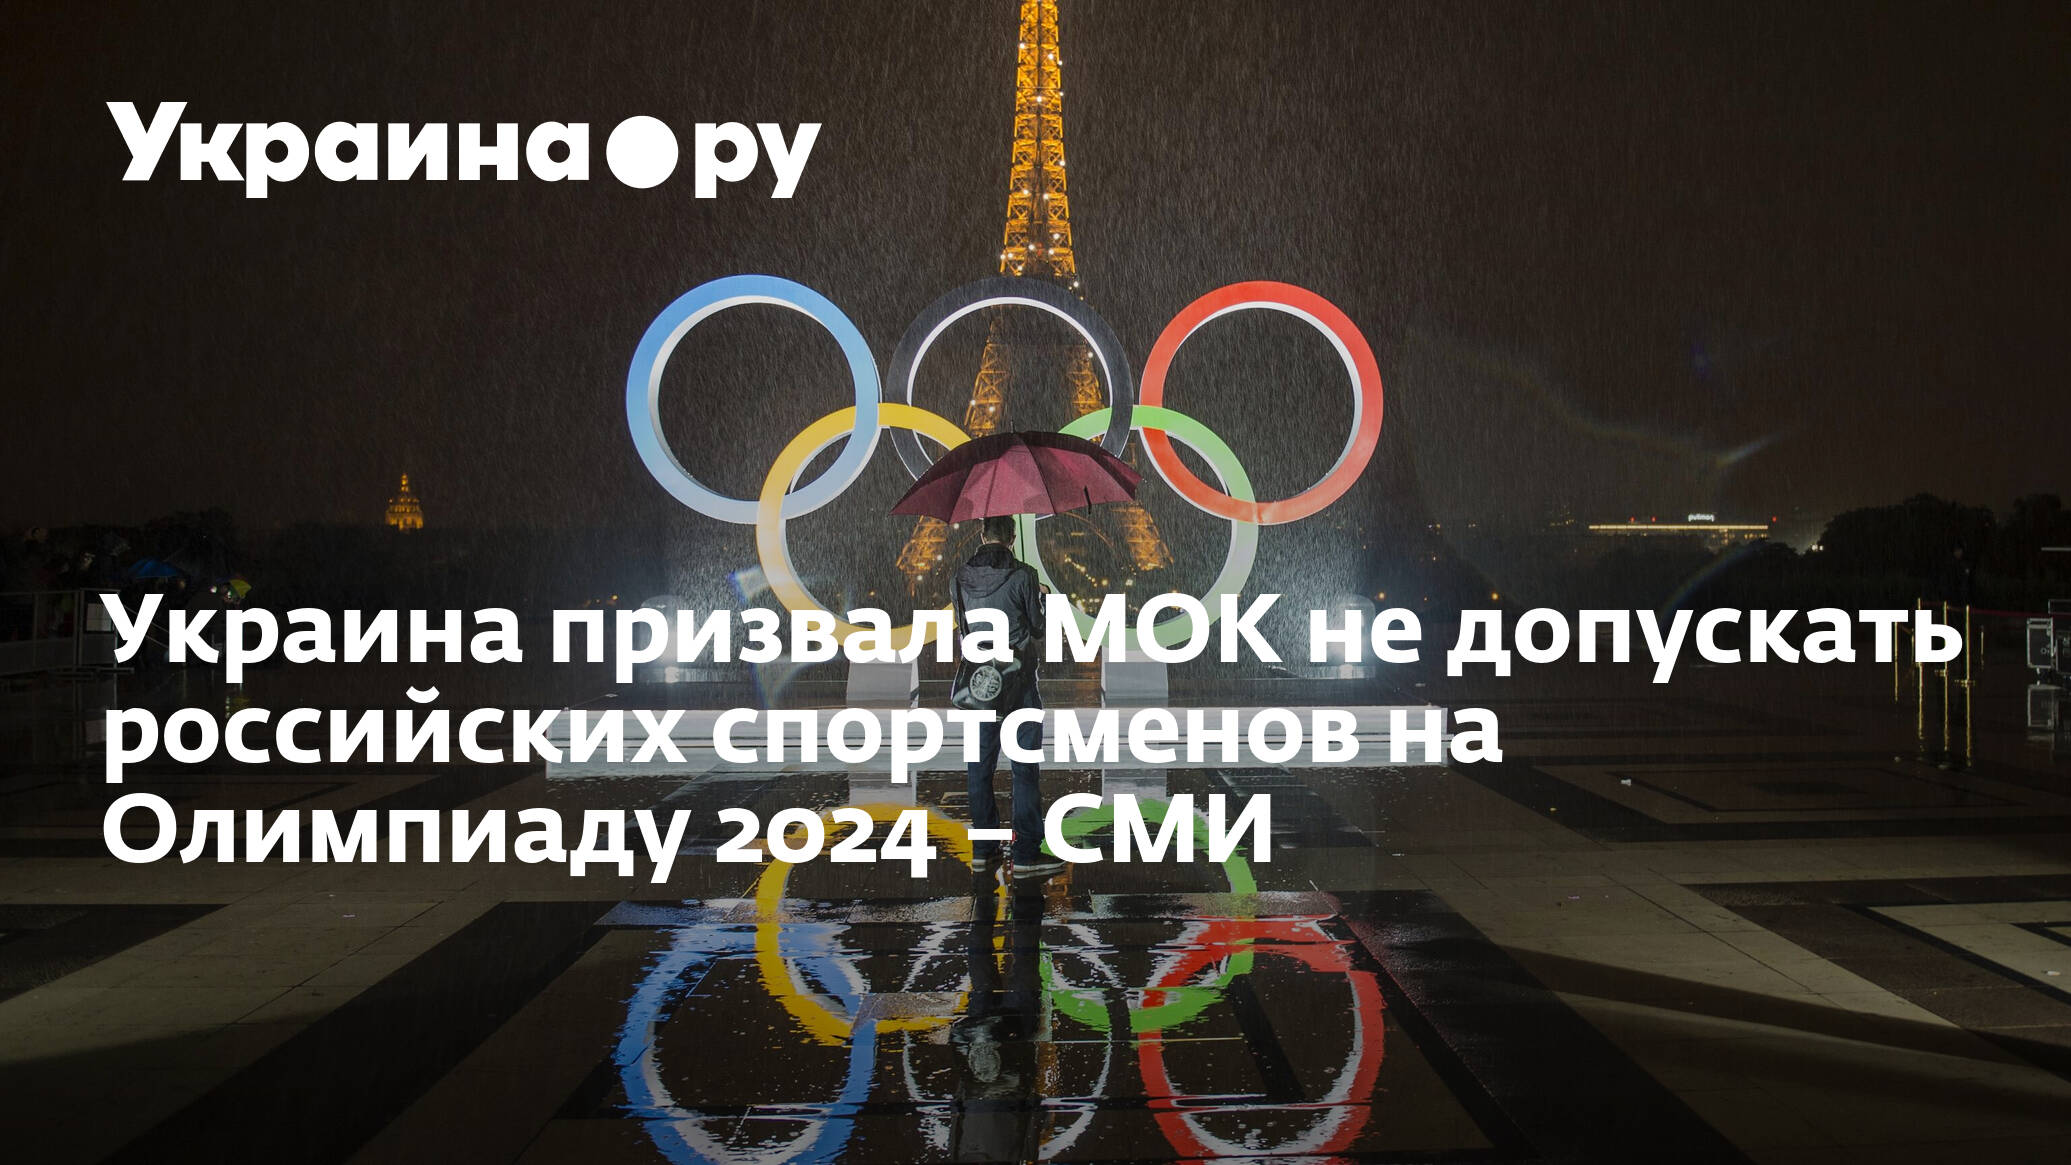 Результаты мгу олимпиады 2024. Летние Олимпийские игры 2024 фото. Приколы про МОК И Олимпиаду 2024. В программу летних Олимпийских 2024 не включили.